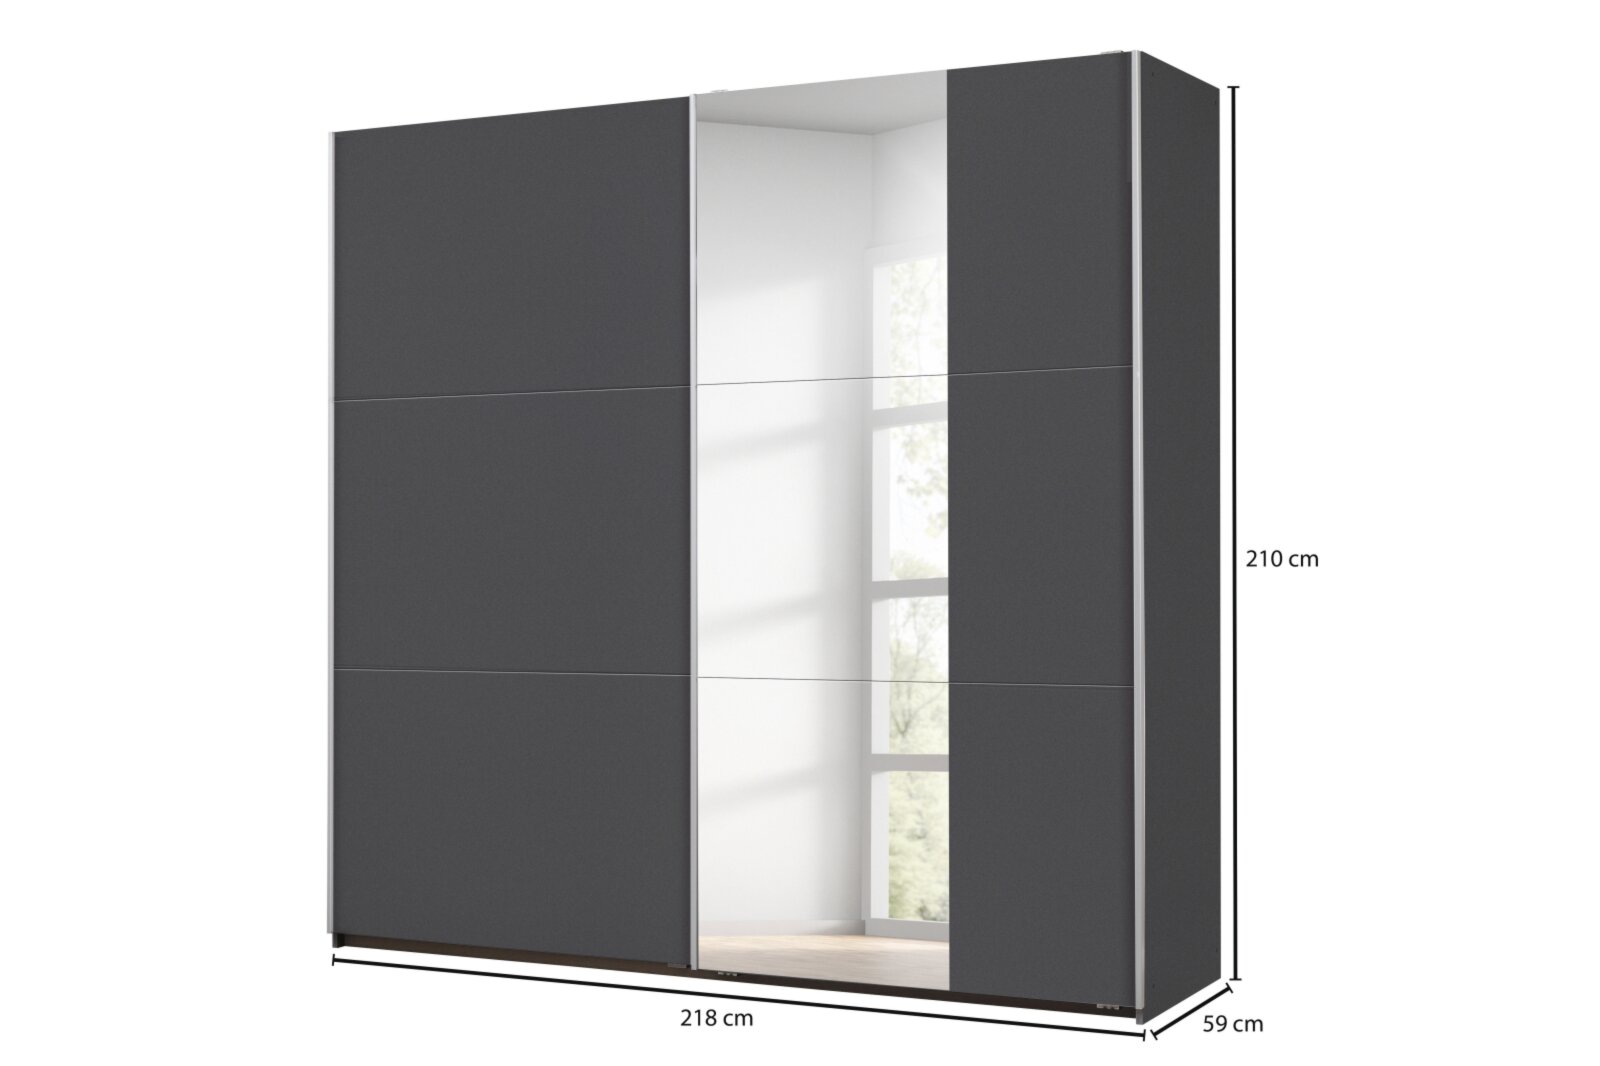 Schwebetürenschrank - grau-metallic - Spiegel - 2 Fachböden - 218 cm |  Online bei ROLLER kaufen